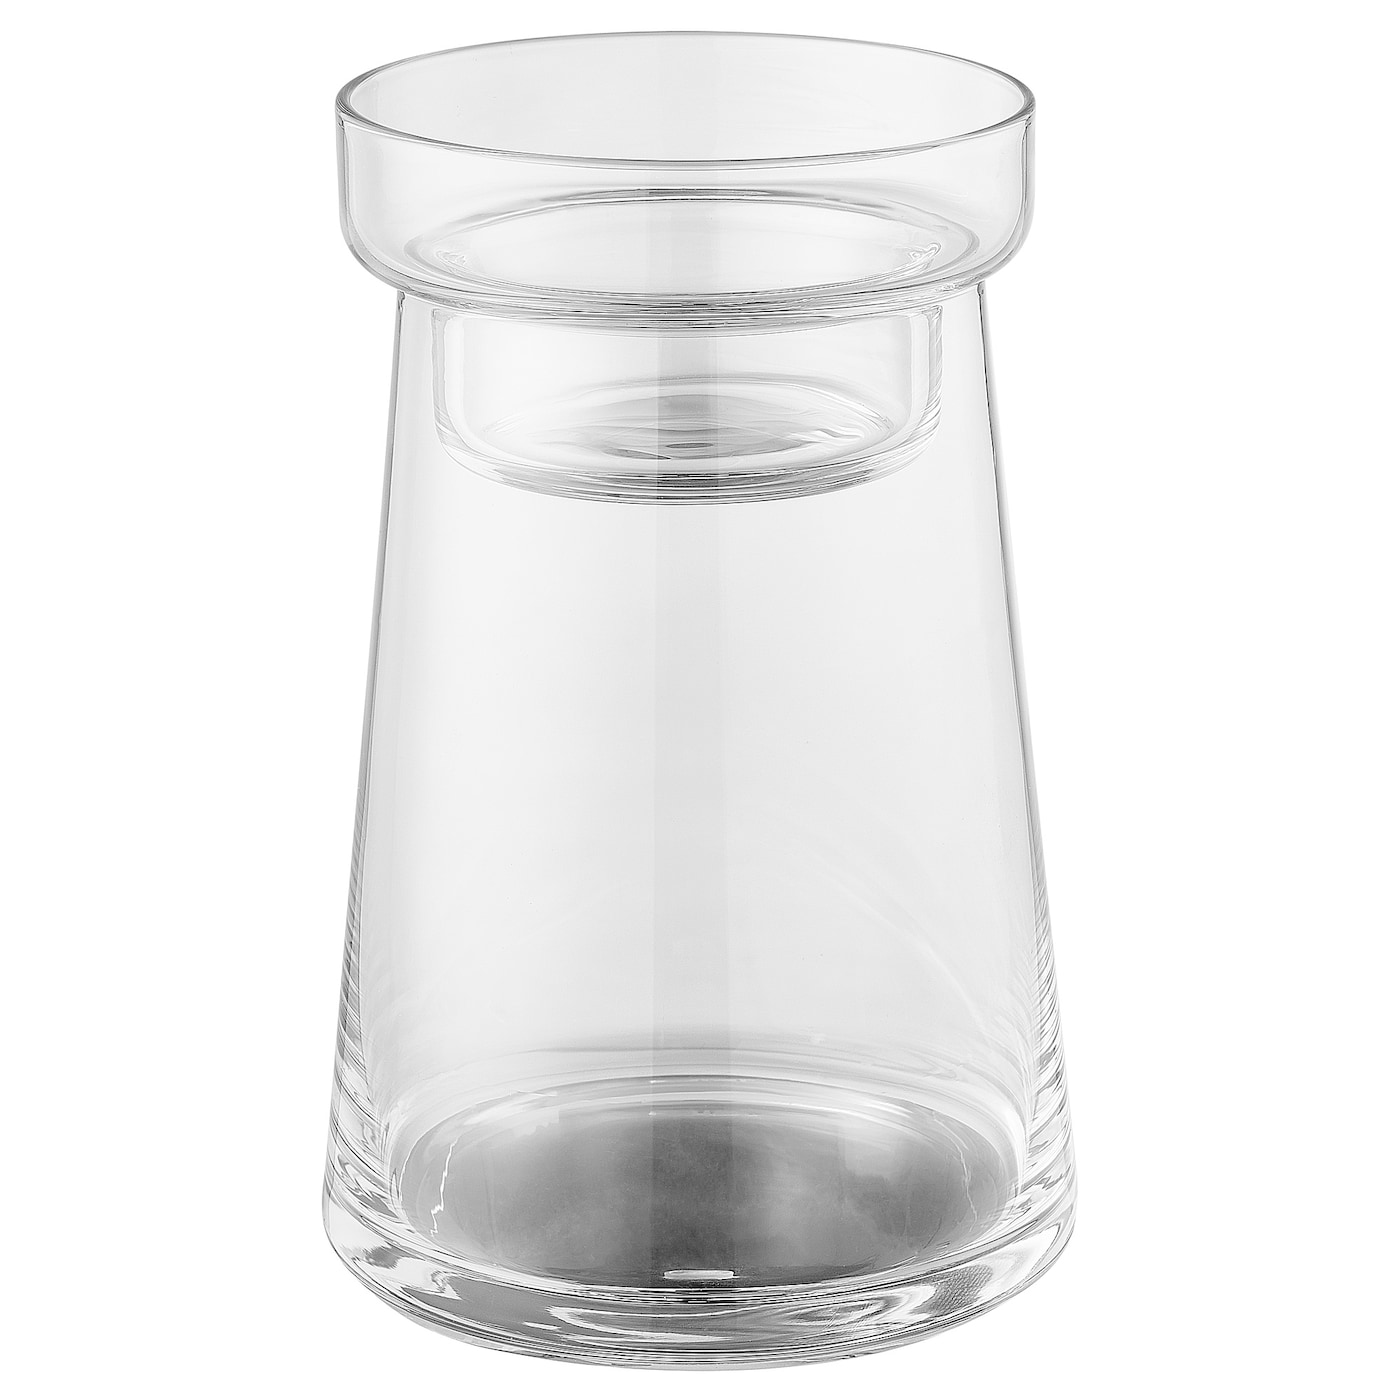 HÖSTNATT Vase/Halter für Teelichter  -  - Möbel Ideen für dein Zuhause von Home Trends. Möbel Trends von Social Media Influencer für dein Skandi Zuhause.